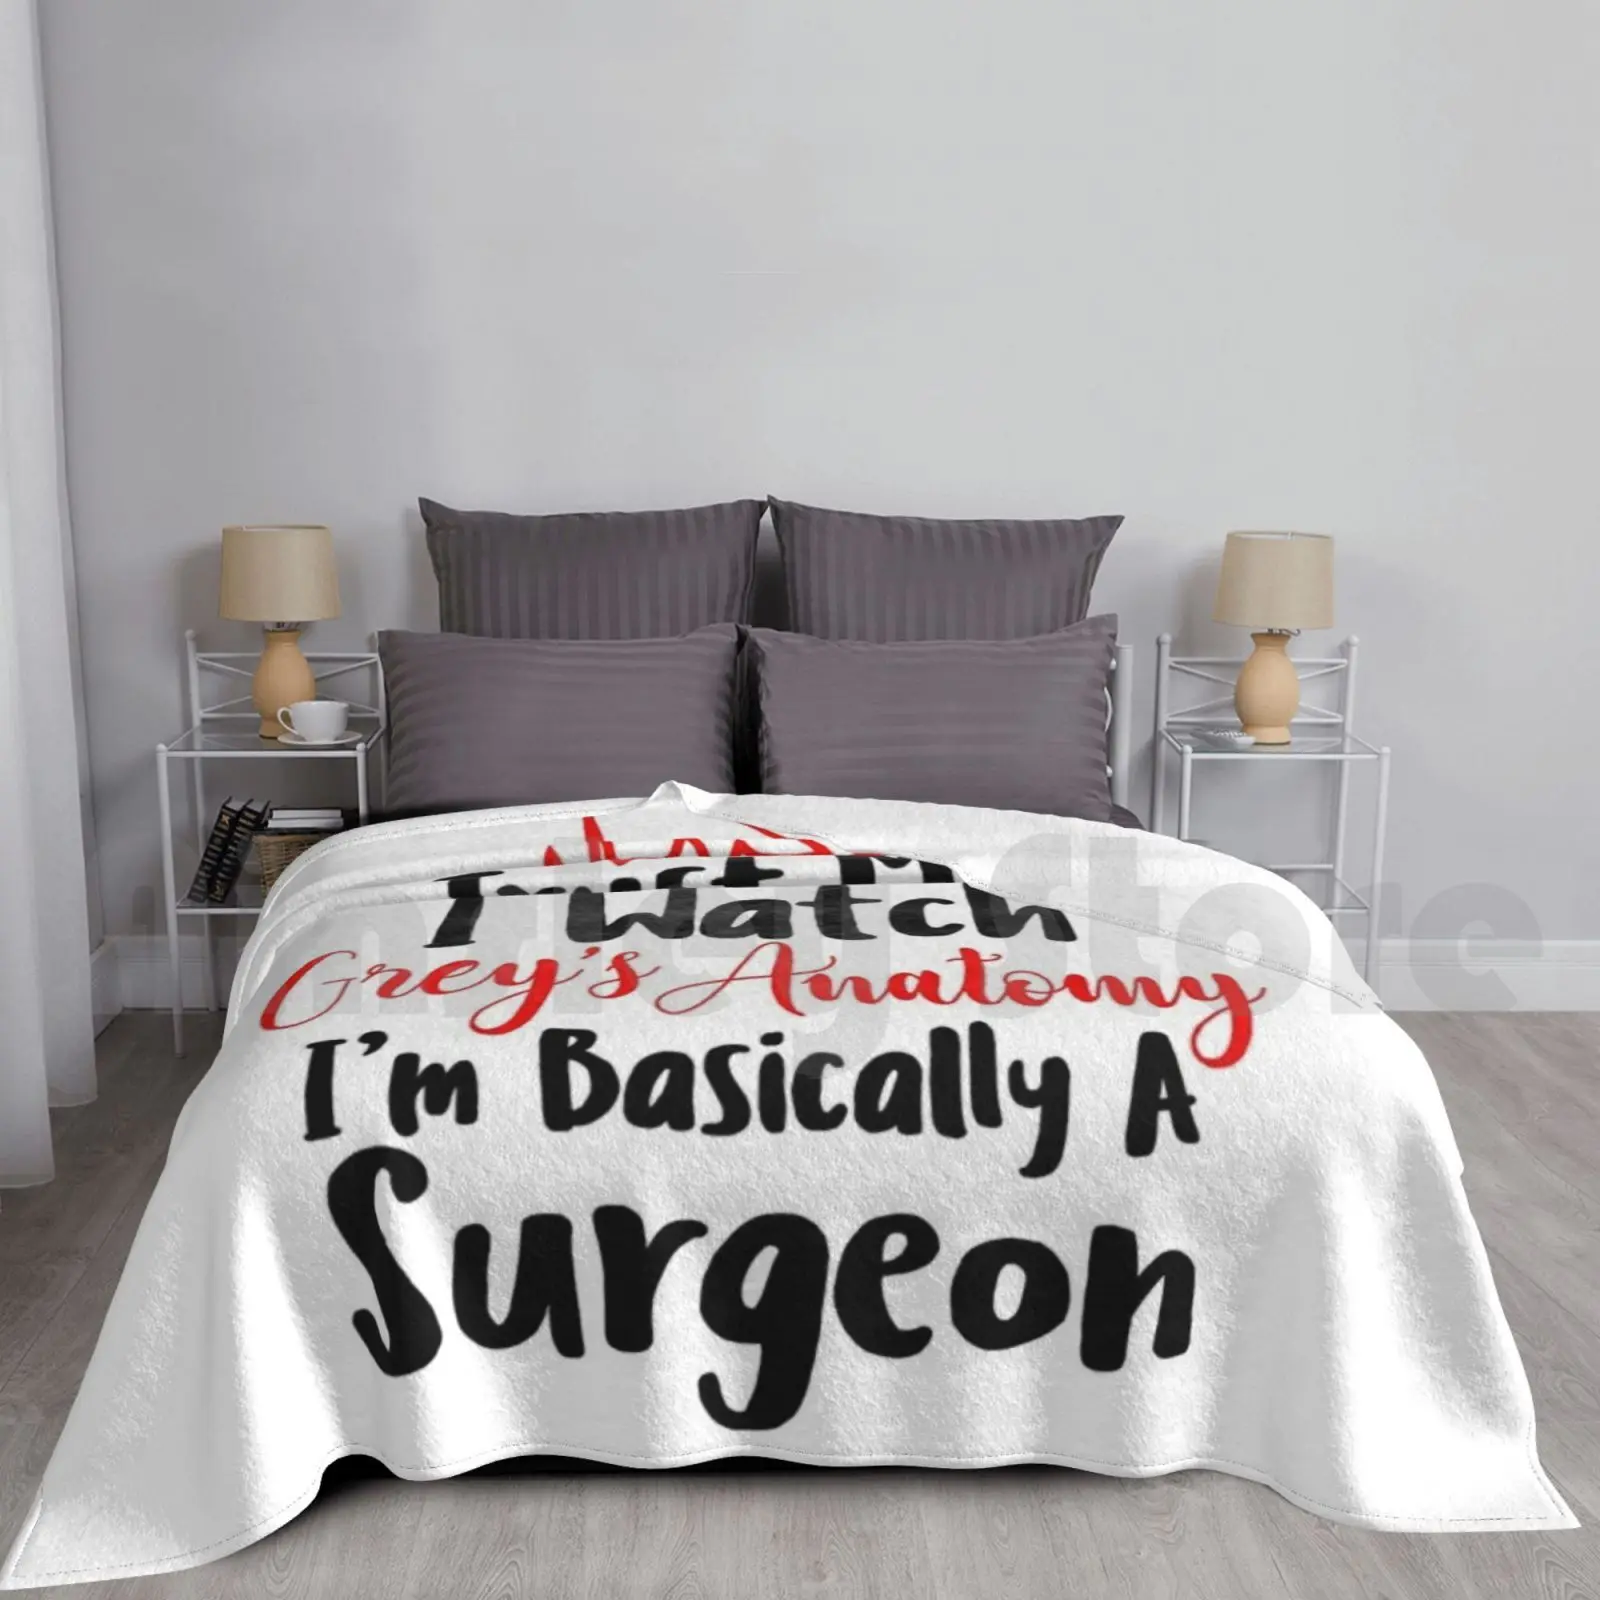 

Серая Анатомия-в основном хирургическое одеяло, супермягкое, теплое, легкое, тонкое, светло-серое, анатомия, Мередит, серый, я в основном